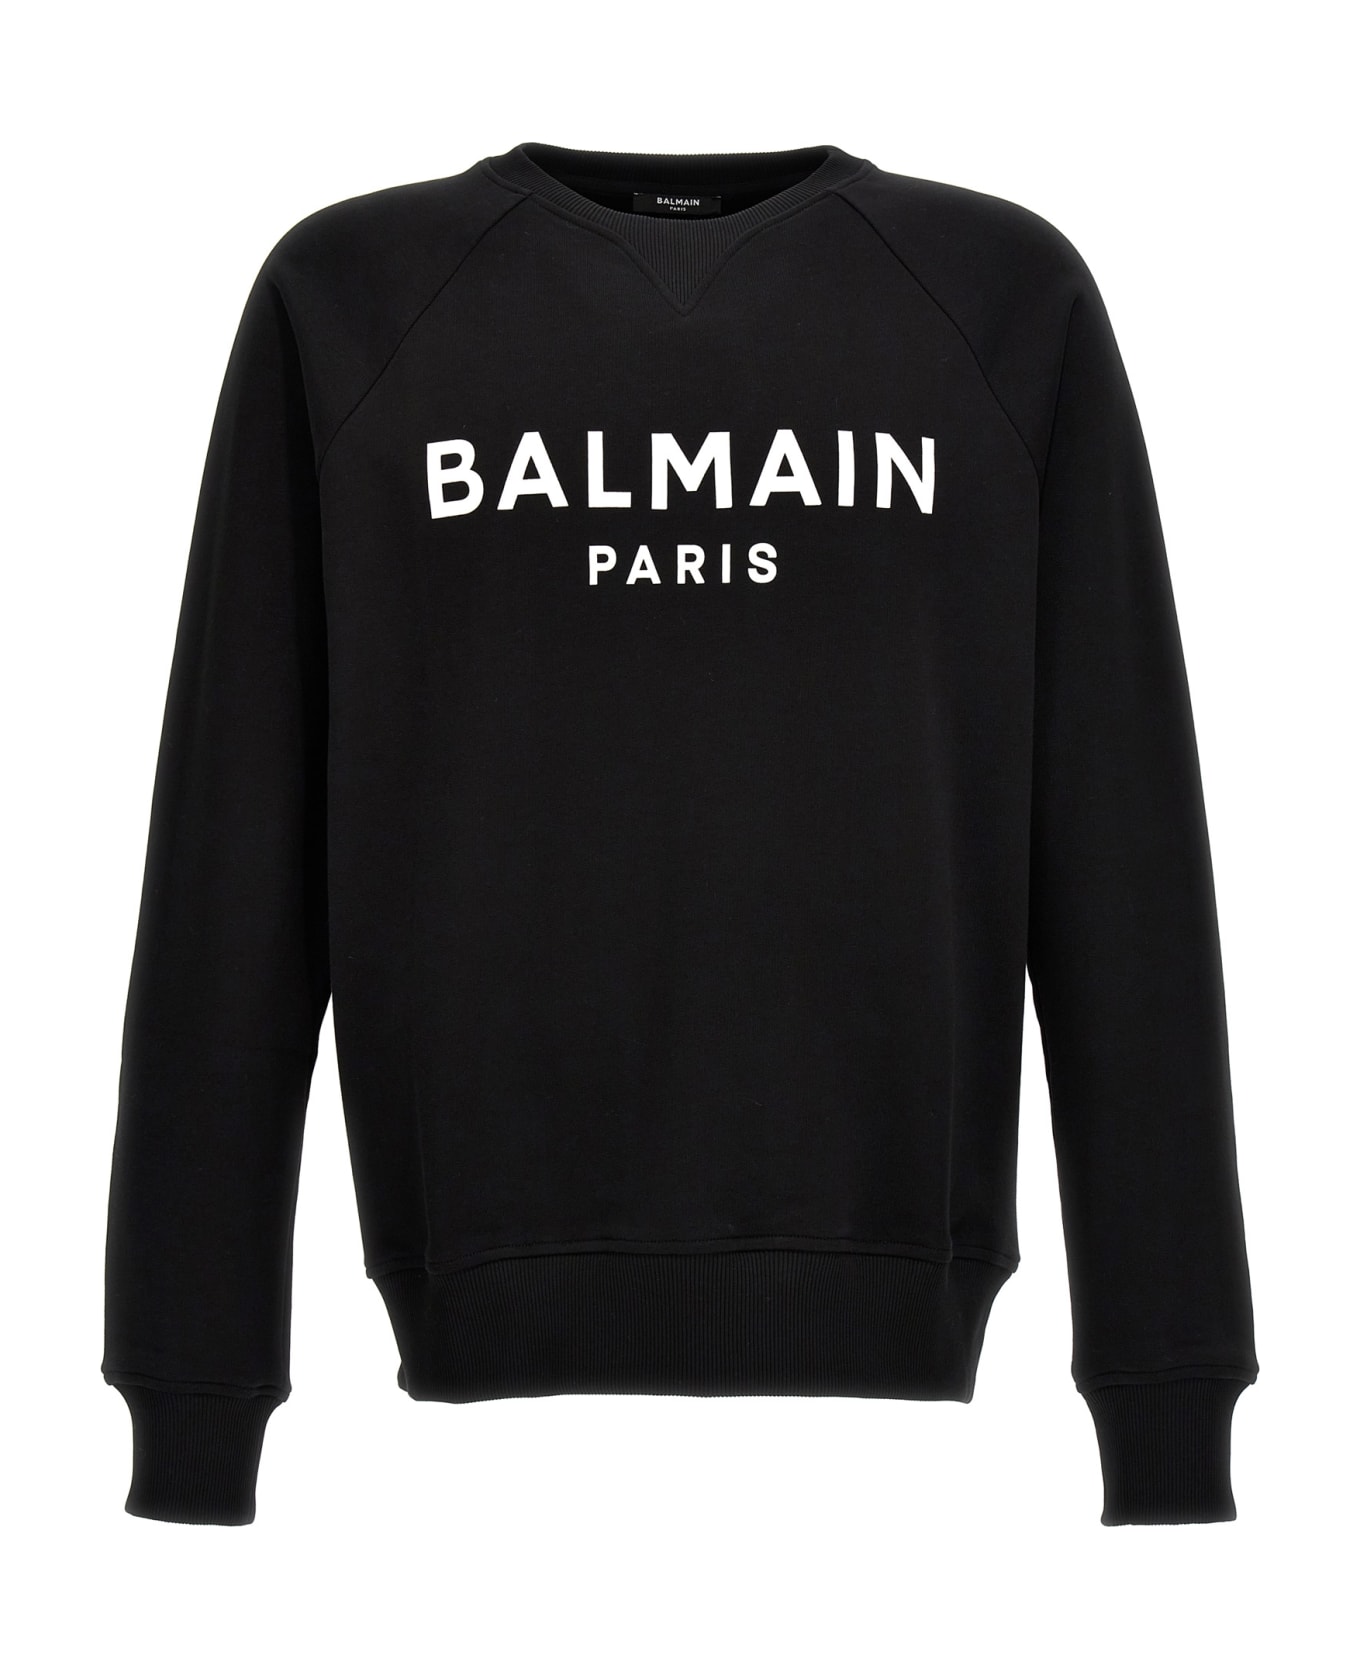 Balmain Sweatshirt - White/Black